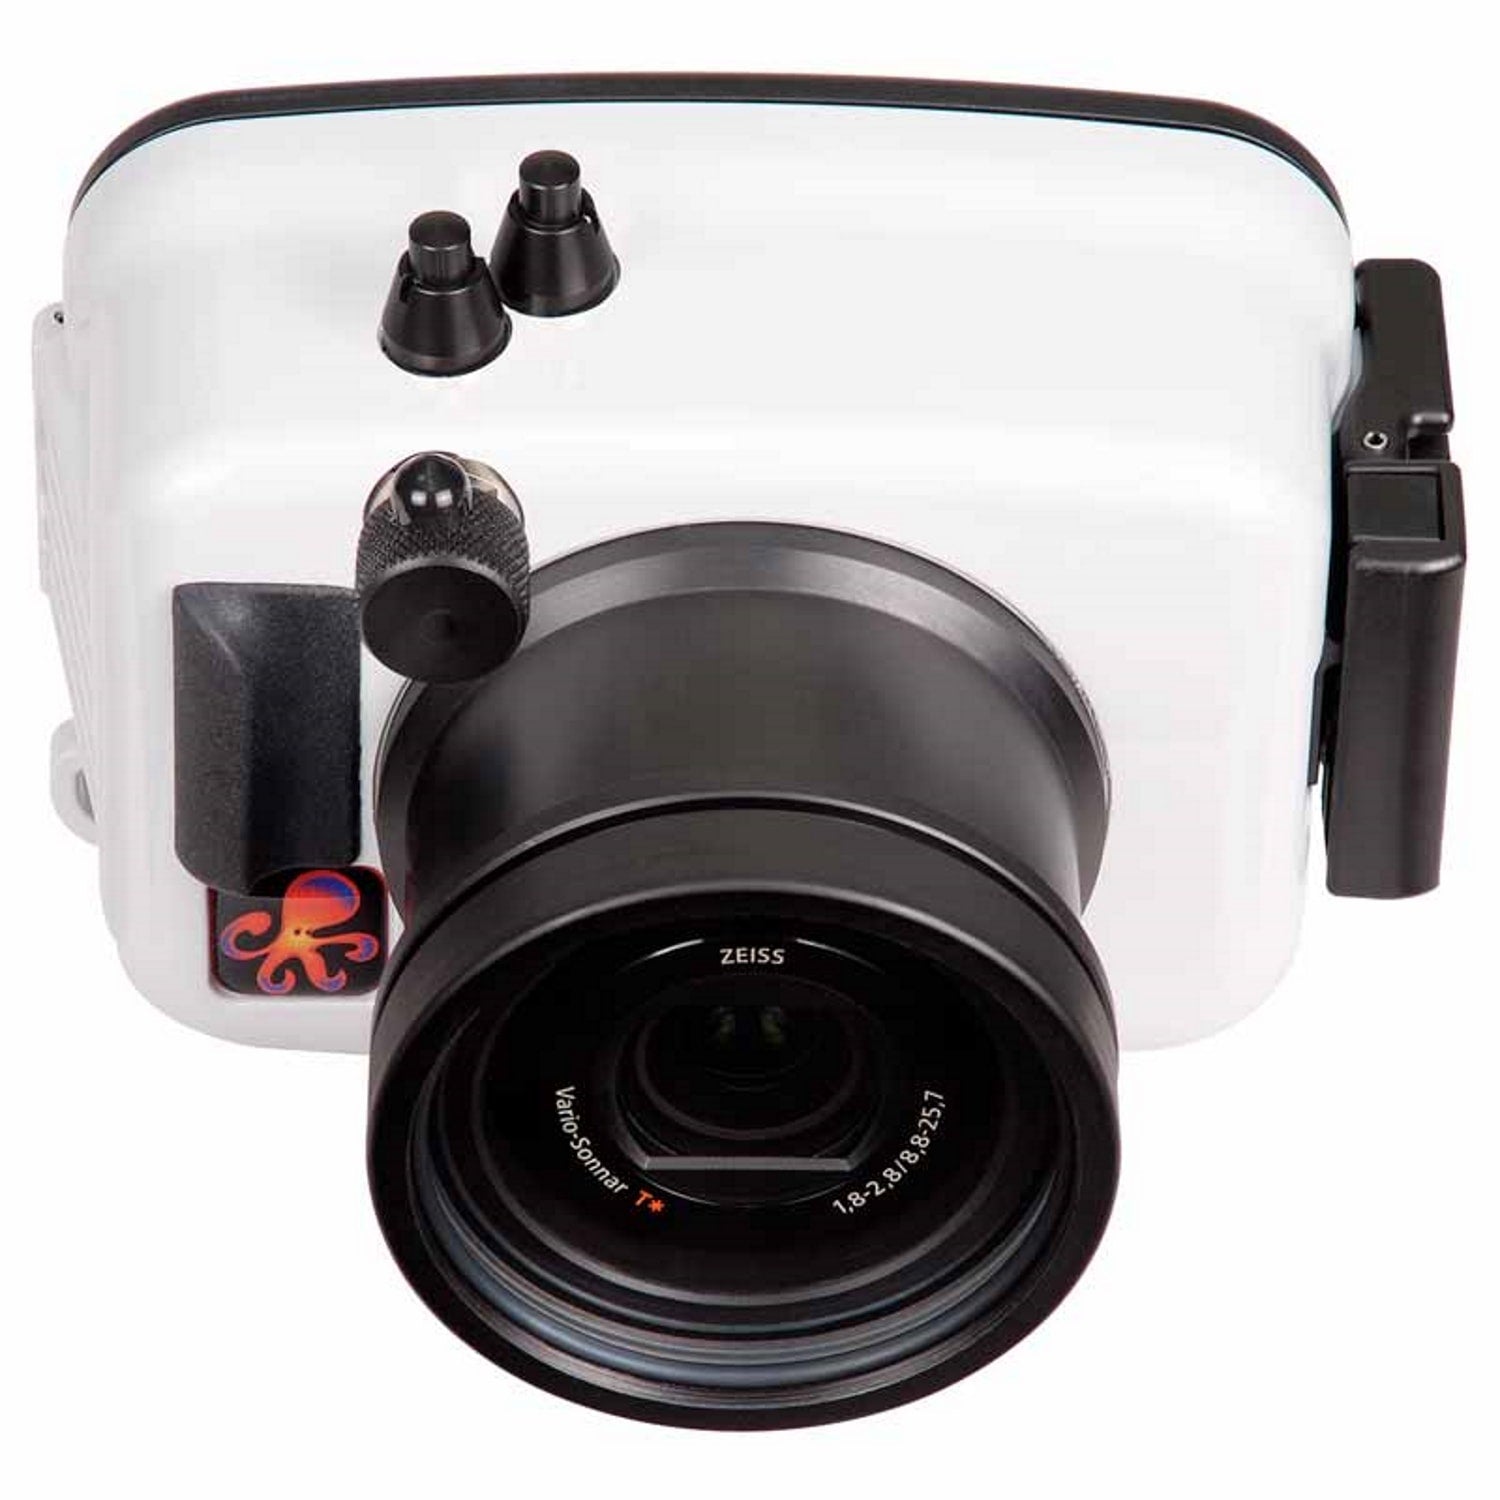 מארז Ikelite קומפקטי למצלמת Sony RX100 III, RX100 IV - דוגית